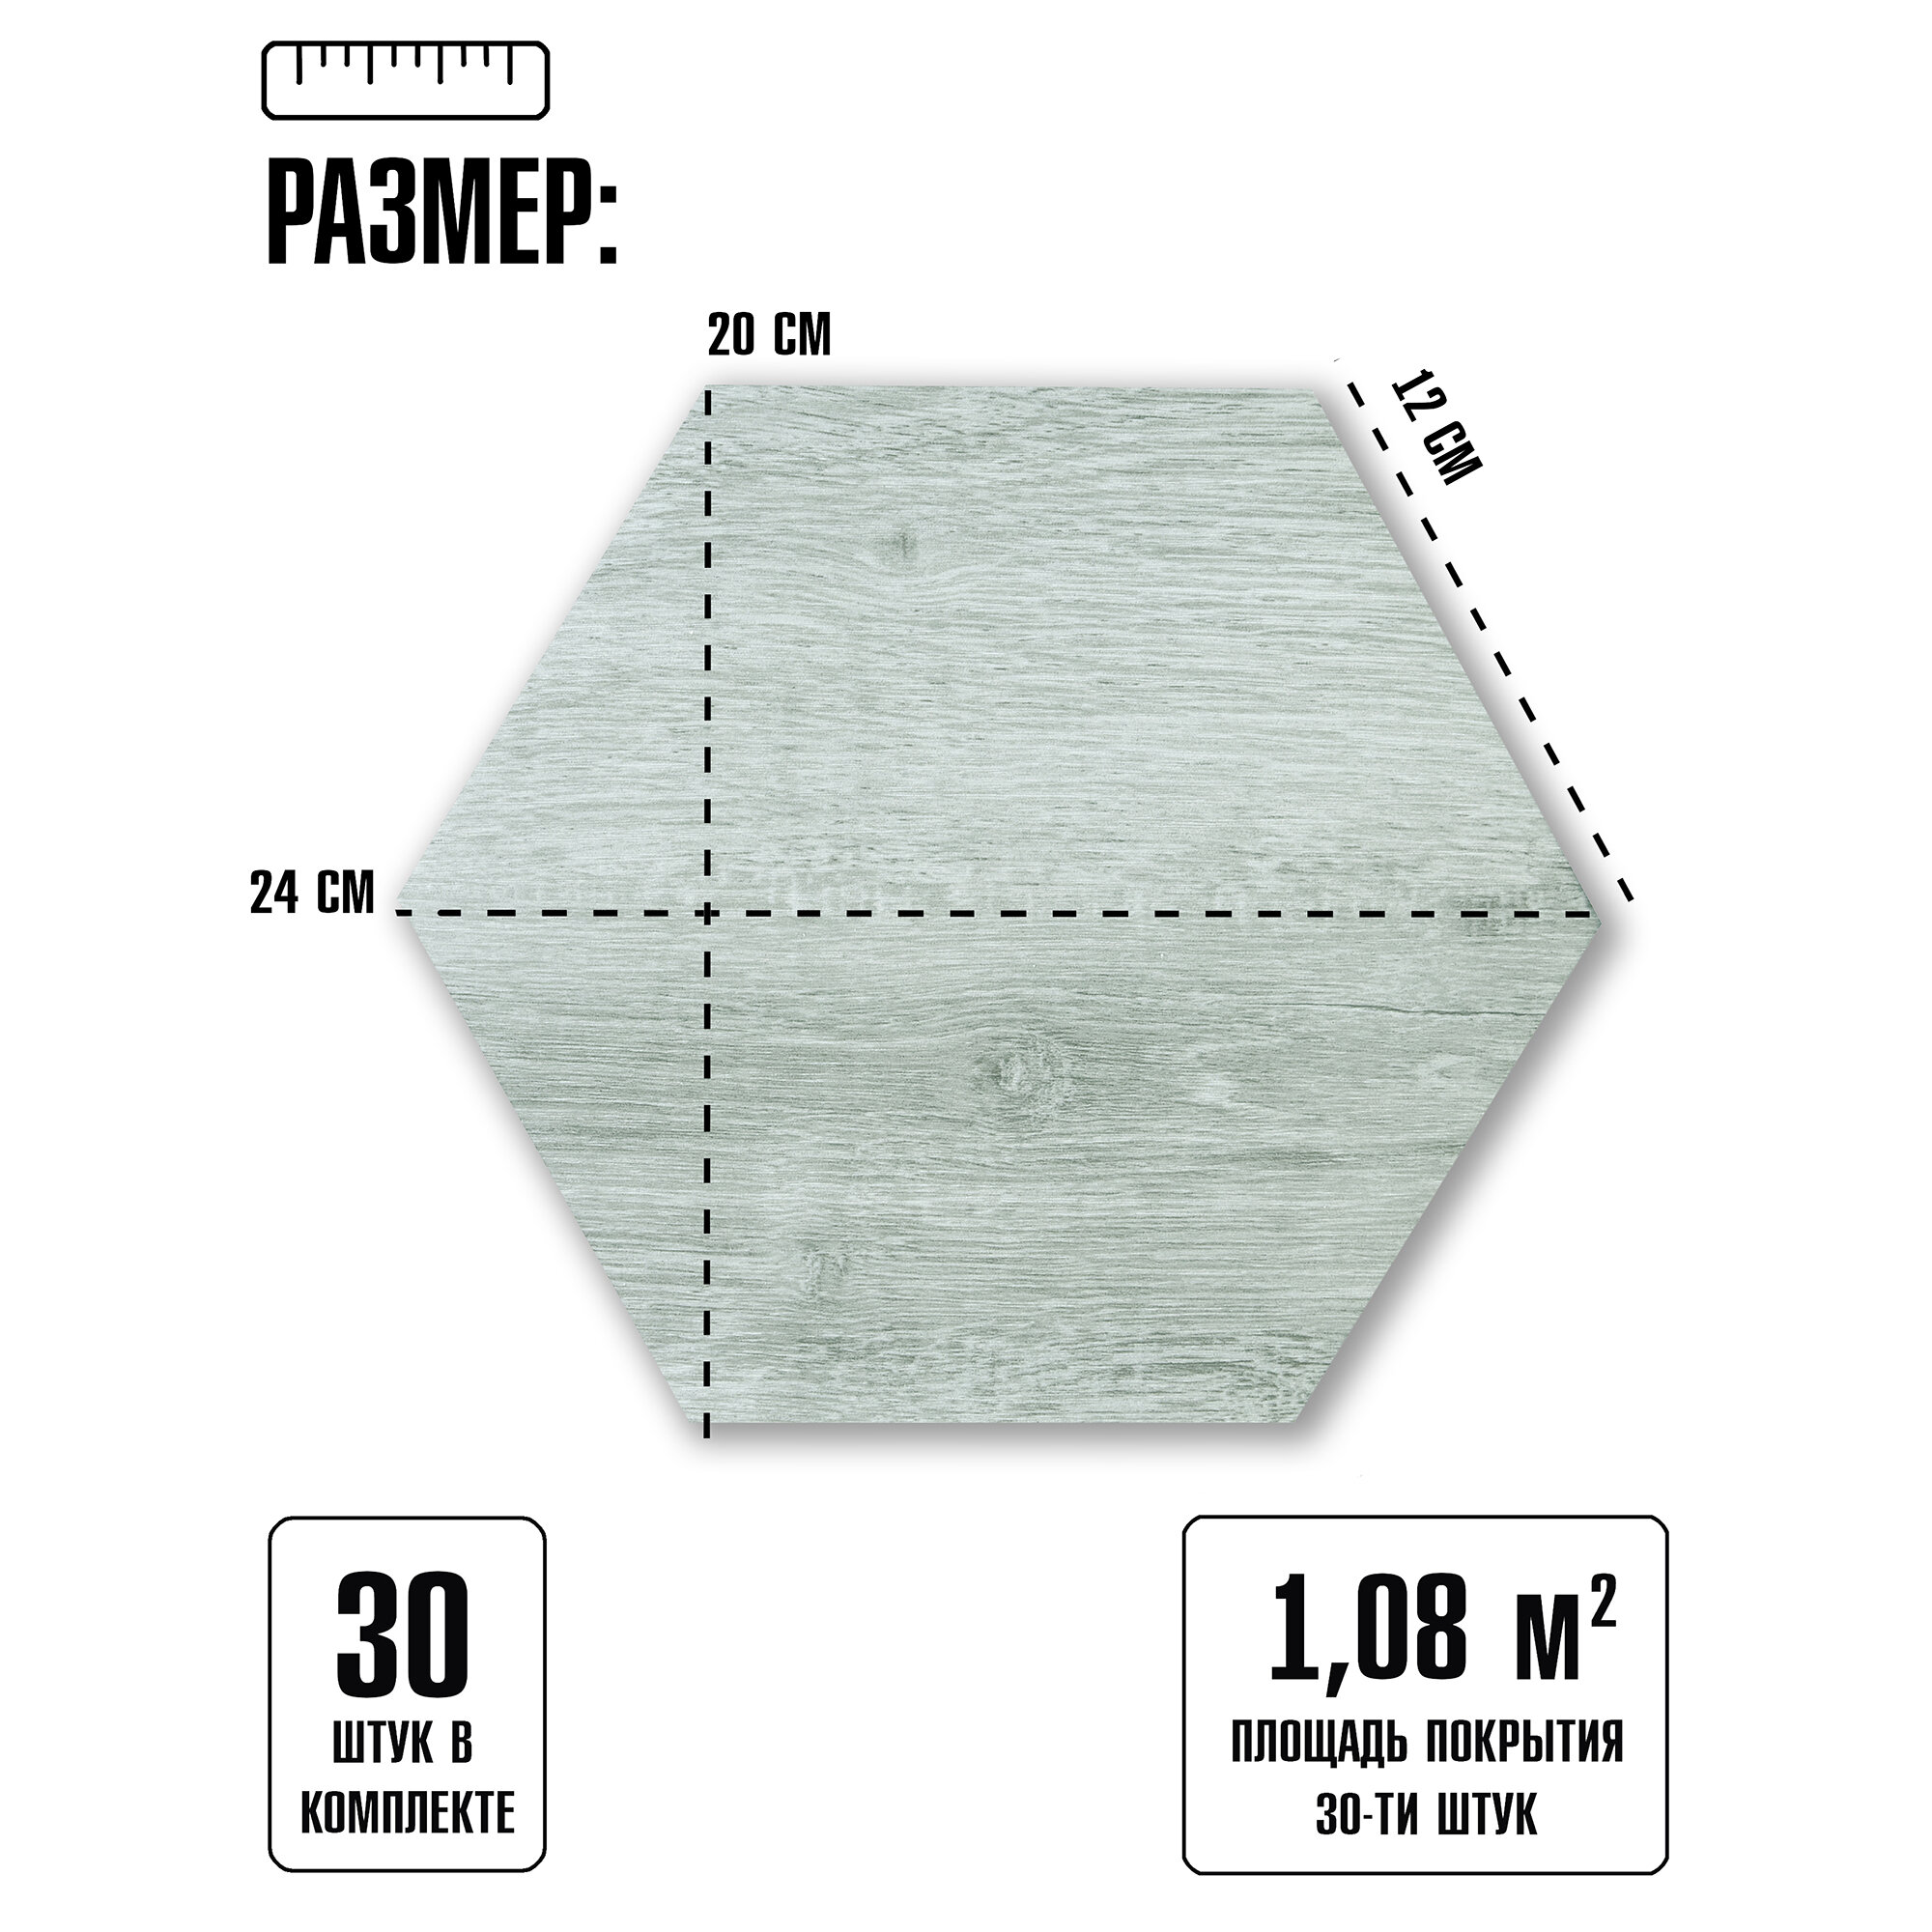 Комплект 30 шт. Соты самоклеящейся ПВХ плитки LAKO DECOR цвет "Кедр беленый", толщина 2 мм, площадь 1,08 м2